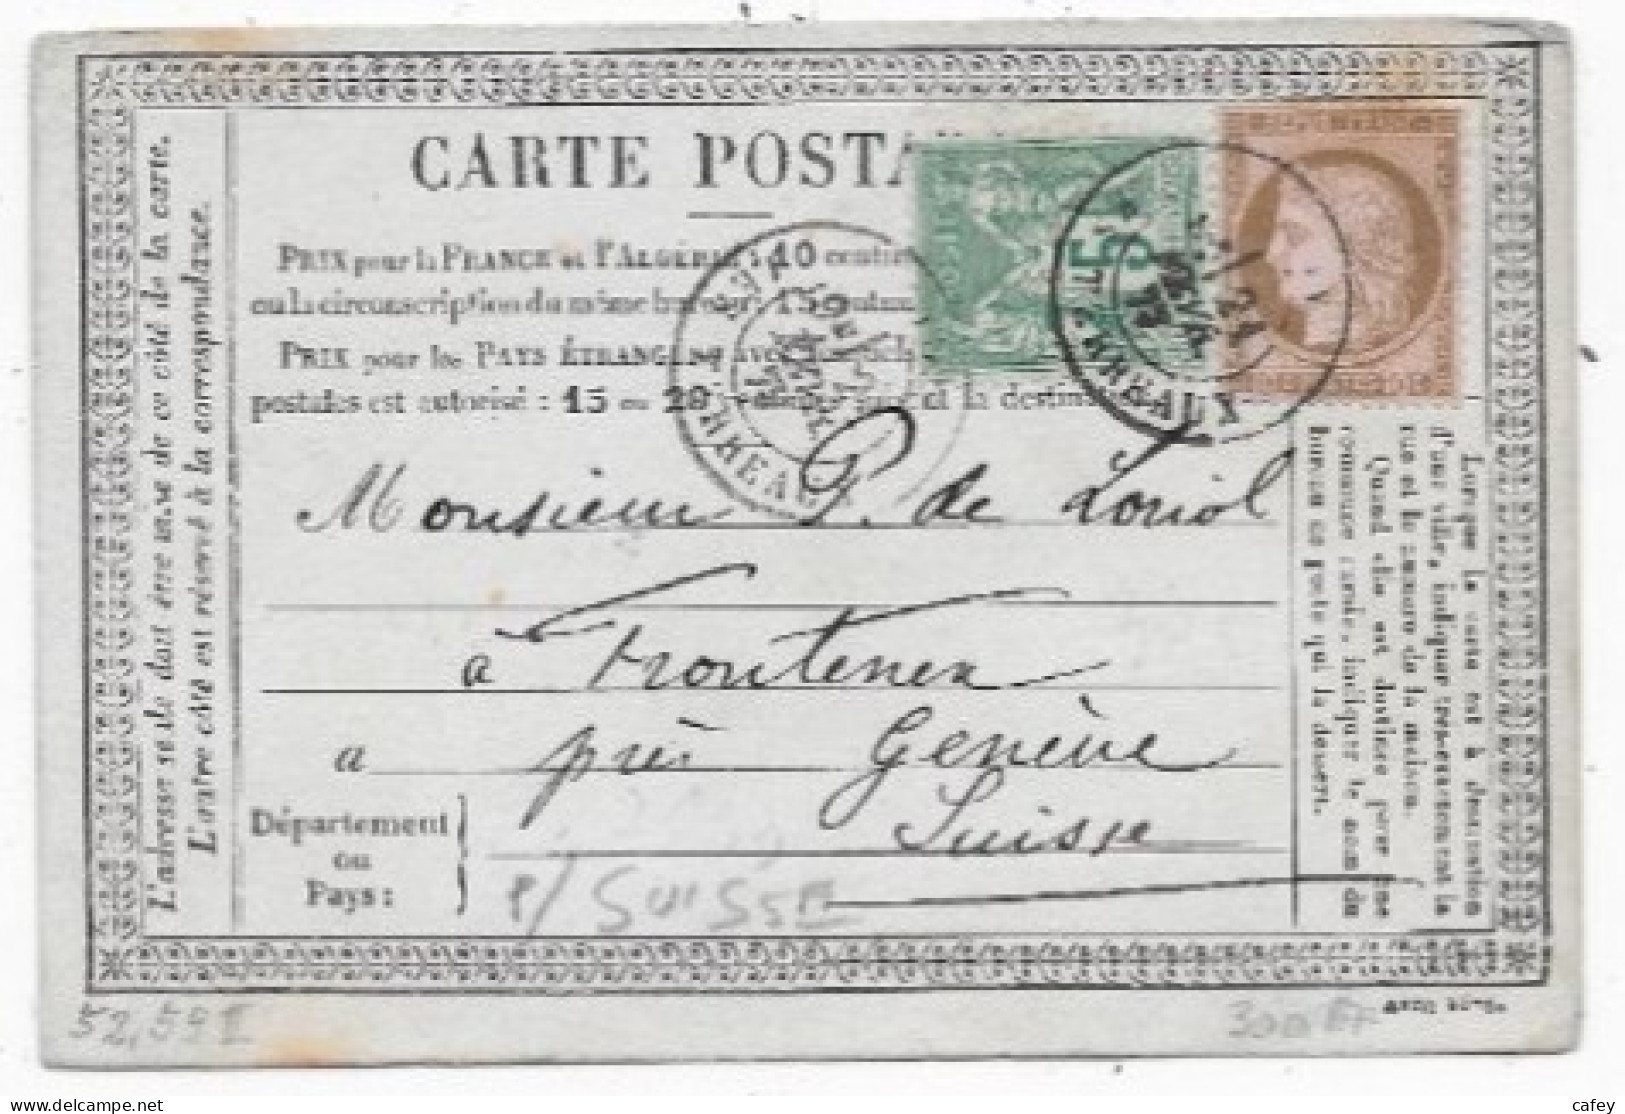 Carte Précurseur De LYON P/ SUISSE Timbres Mixte CERES / SAGE 1877 - 1849-1876: Classic Period